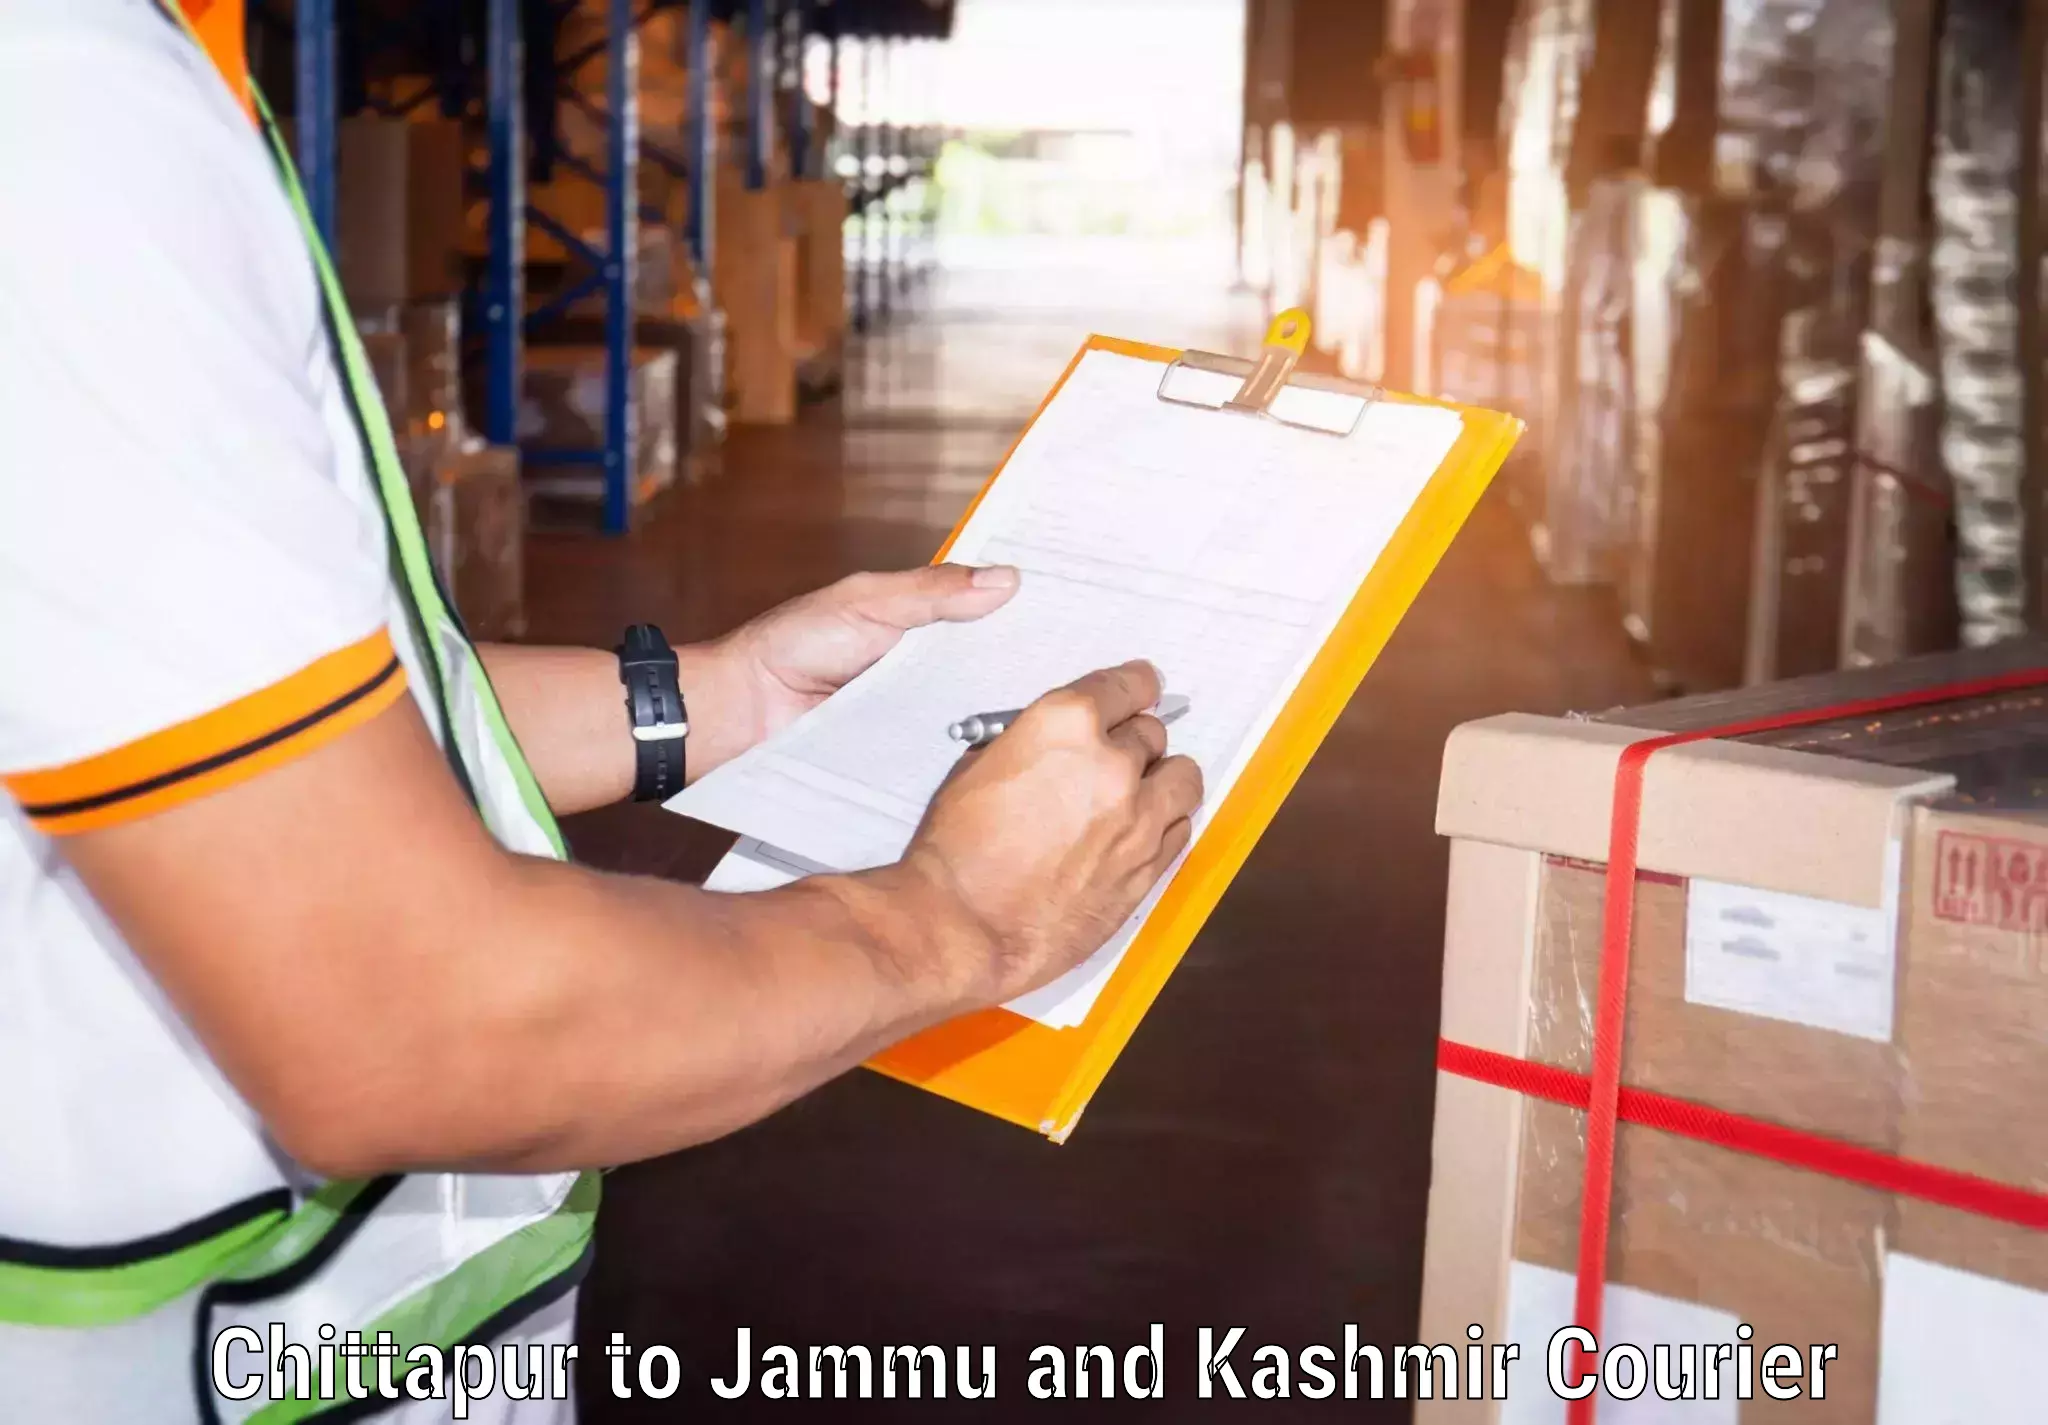 Nationwide shipping capabilities Chittapur to University of Jammu